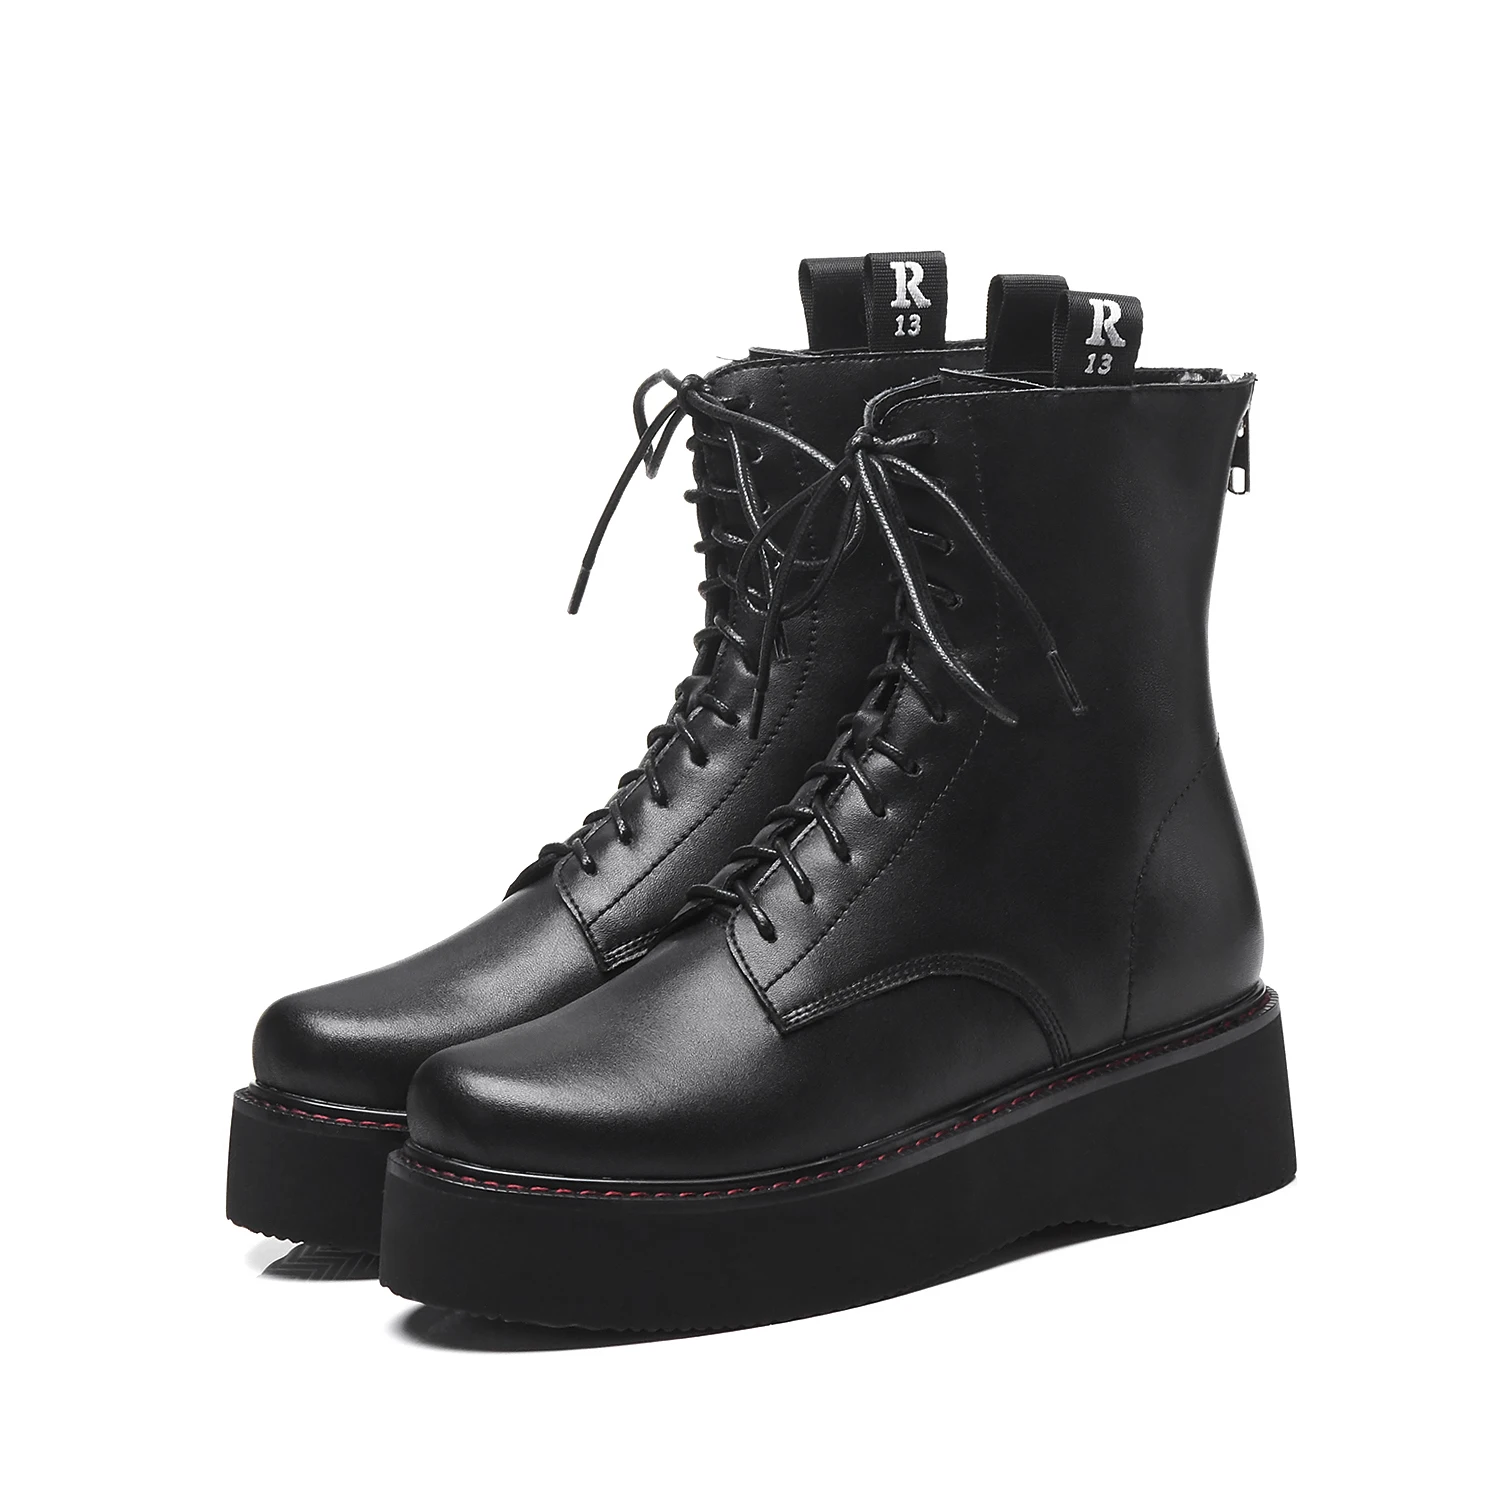 SKLFCXZY/новые стильные кожаные ботинки для девочек ботильоны на толстом каблуке 5 см женские ботинки на шнуровке женская кожаная обувь высокого качества - Цвет: Черный